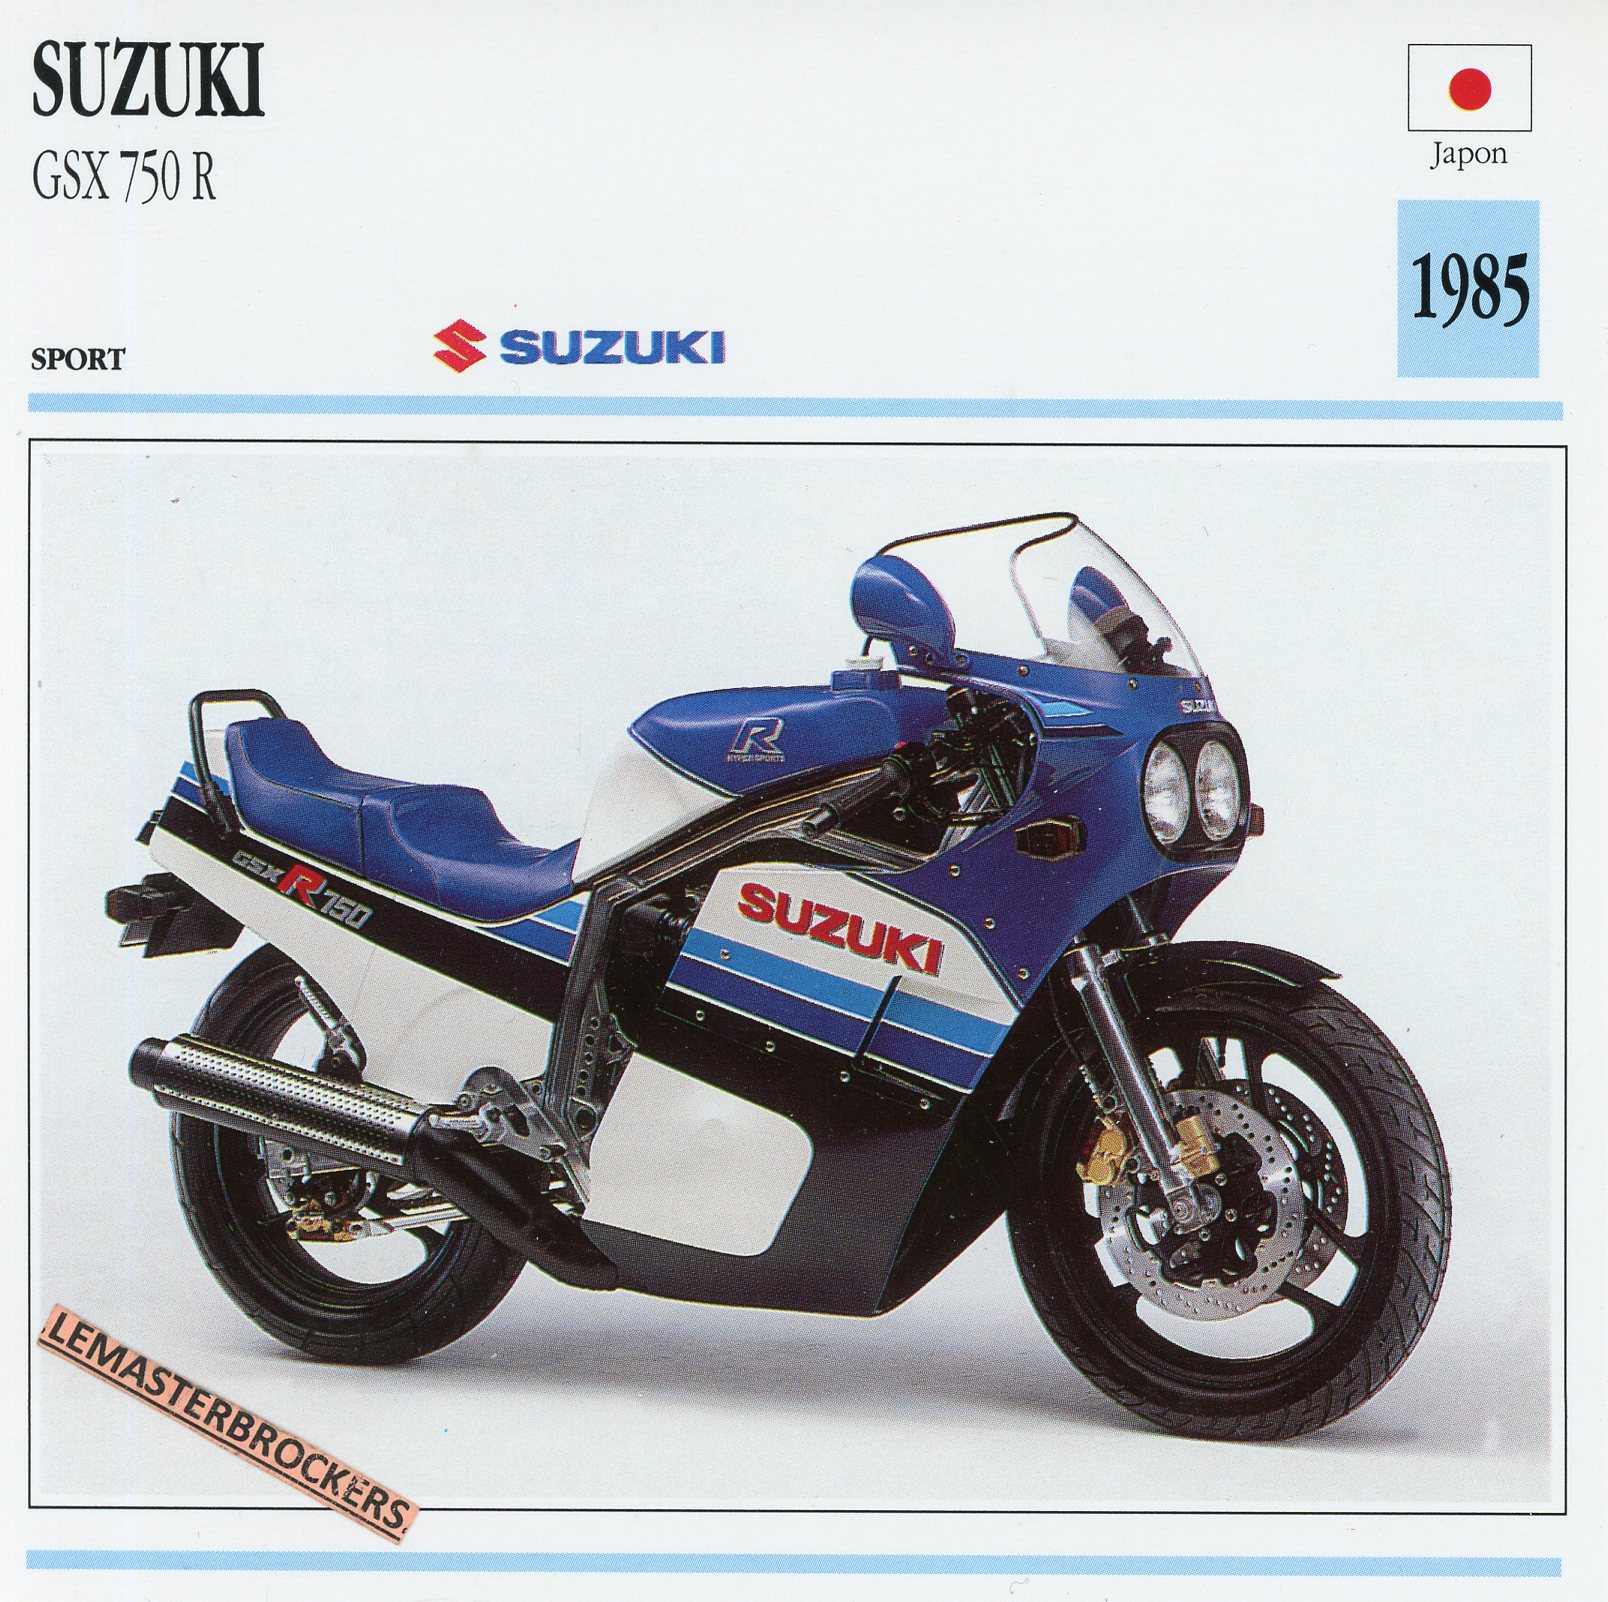 SUZUKI-gsx-750-gsx750r-gsx750-1985-FICHE-MOTO-LEMASTERBROCKERS